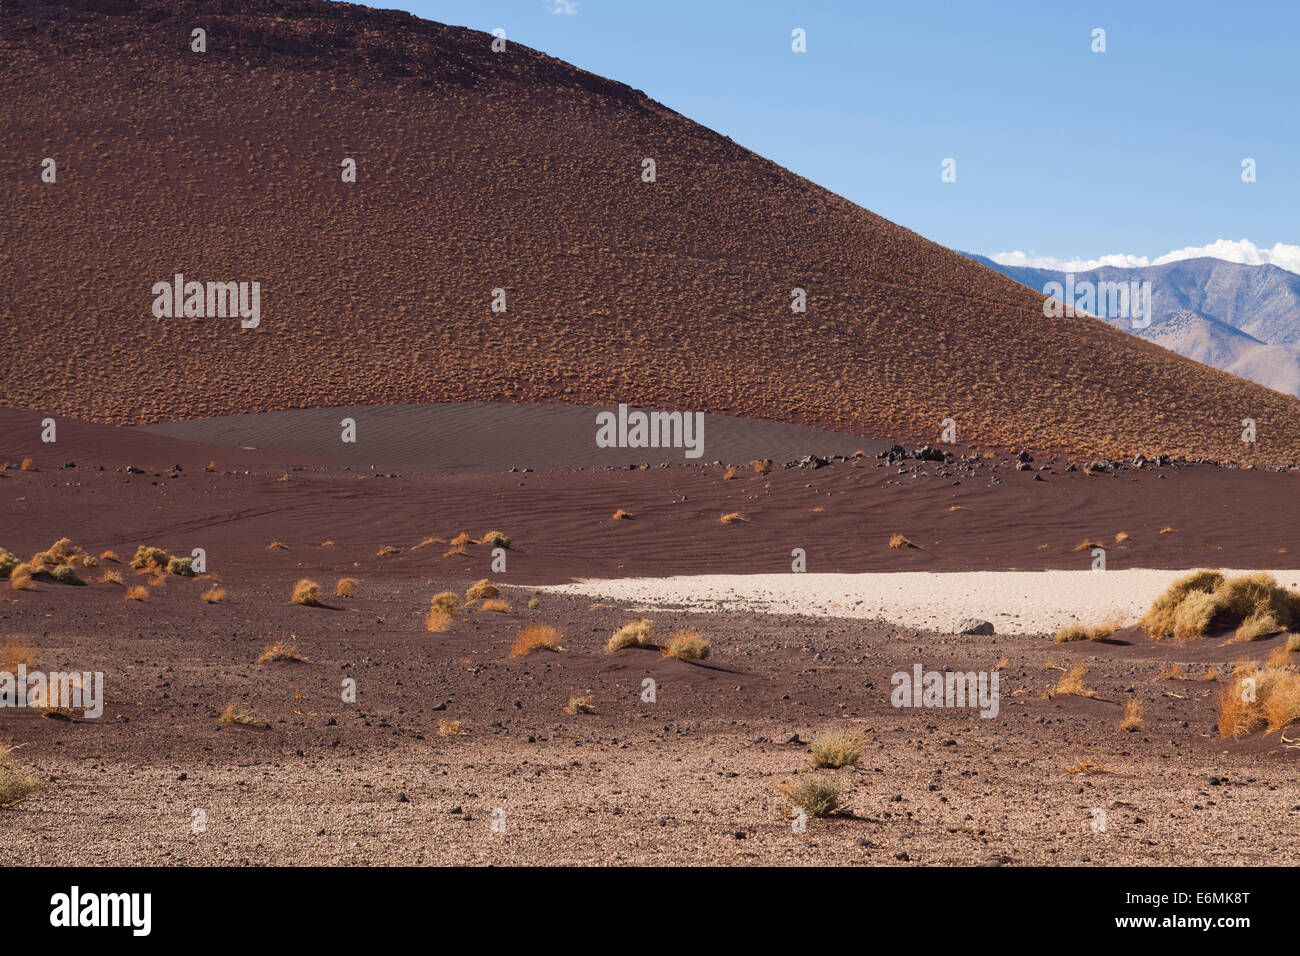 US Südwesten Wüste Cinder Cone - Kalifornien, USA Stockfoto